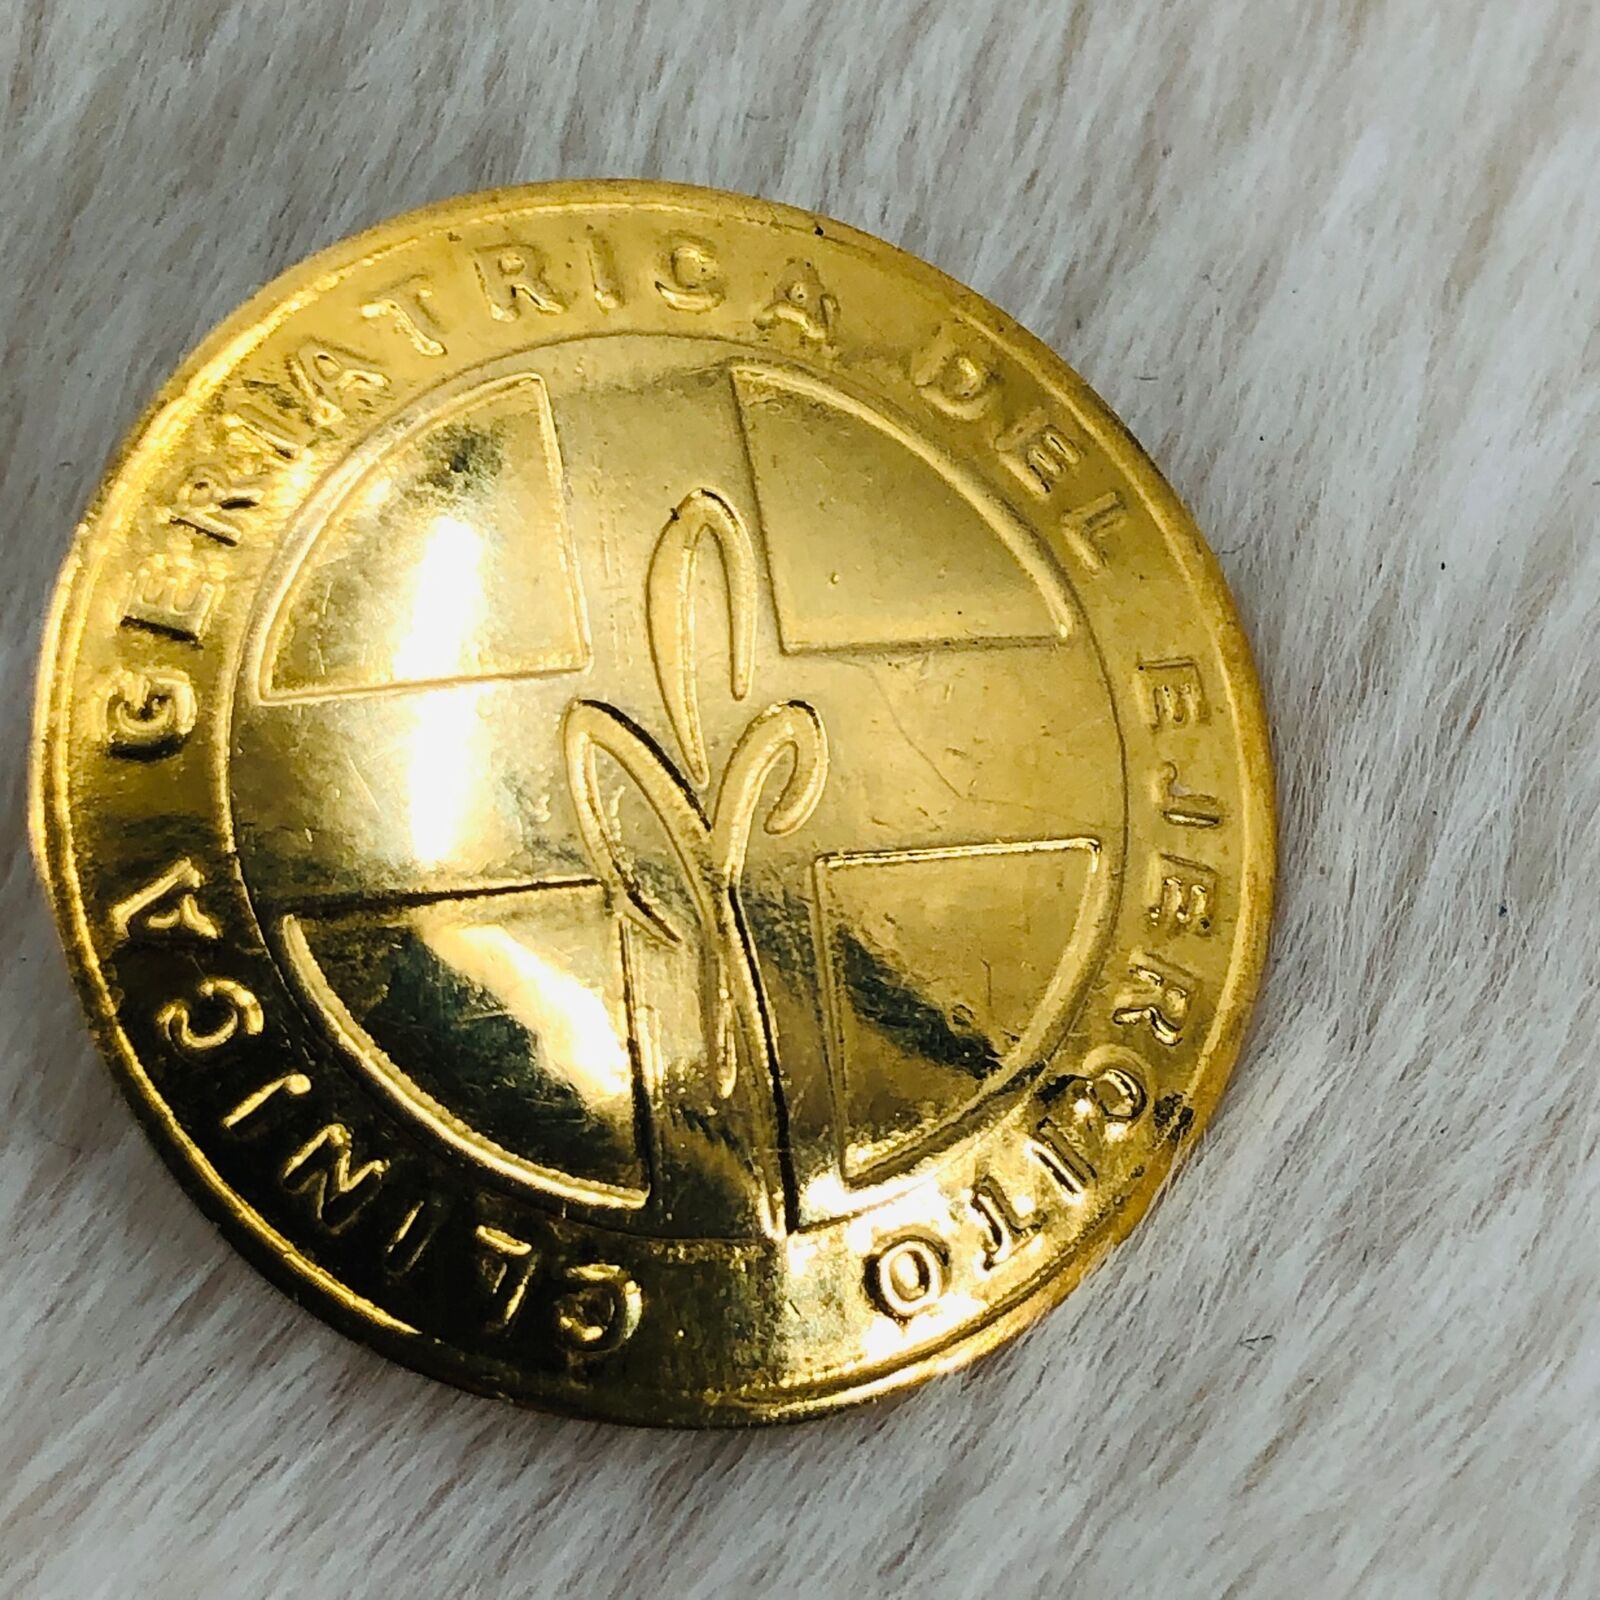 Clinica Geriatrica Del Ejercito Gold Tone Lapel Pin Lima Peru Souvenir